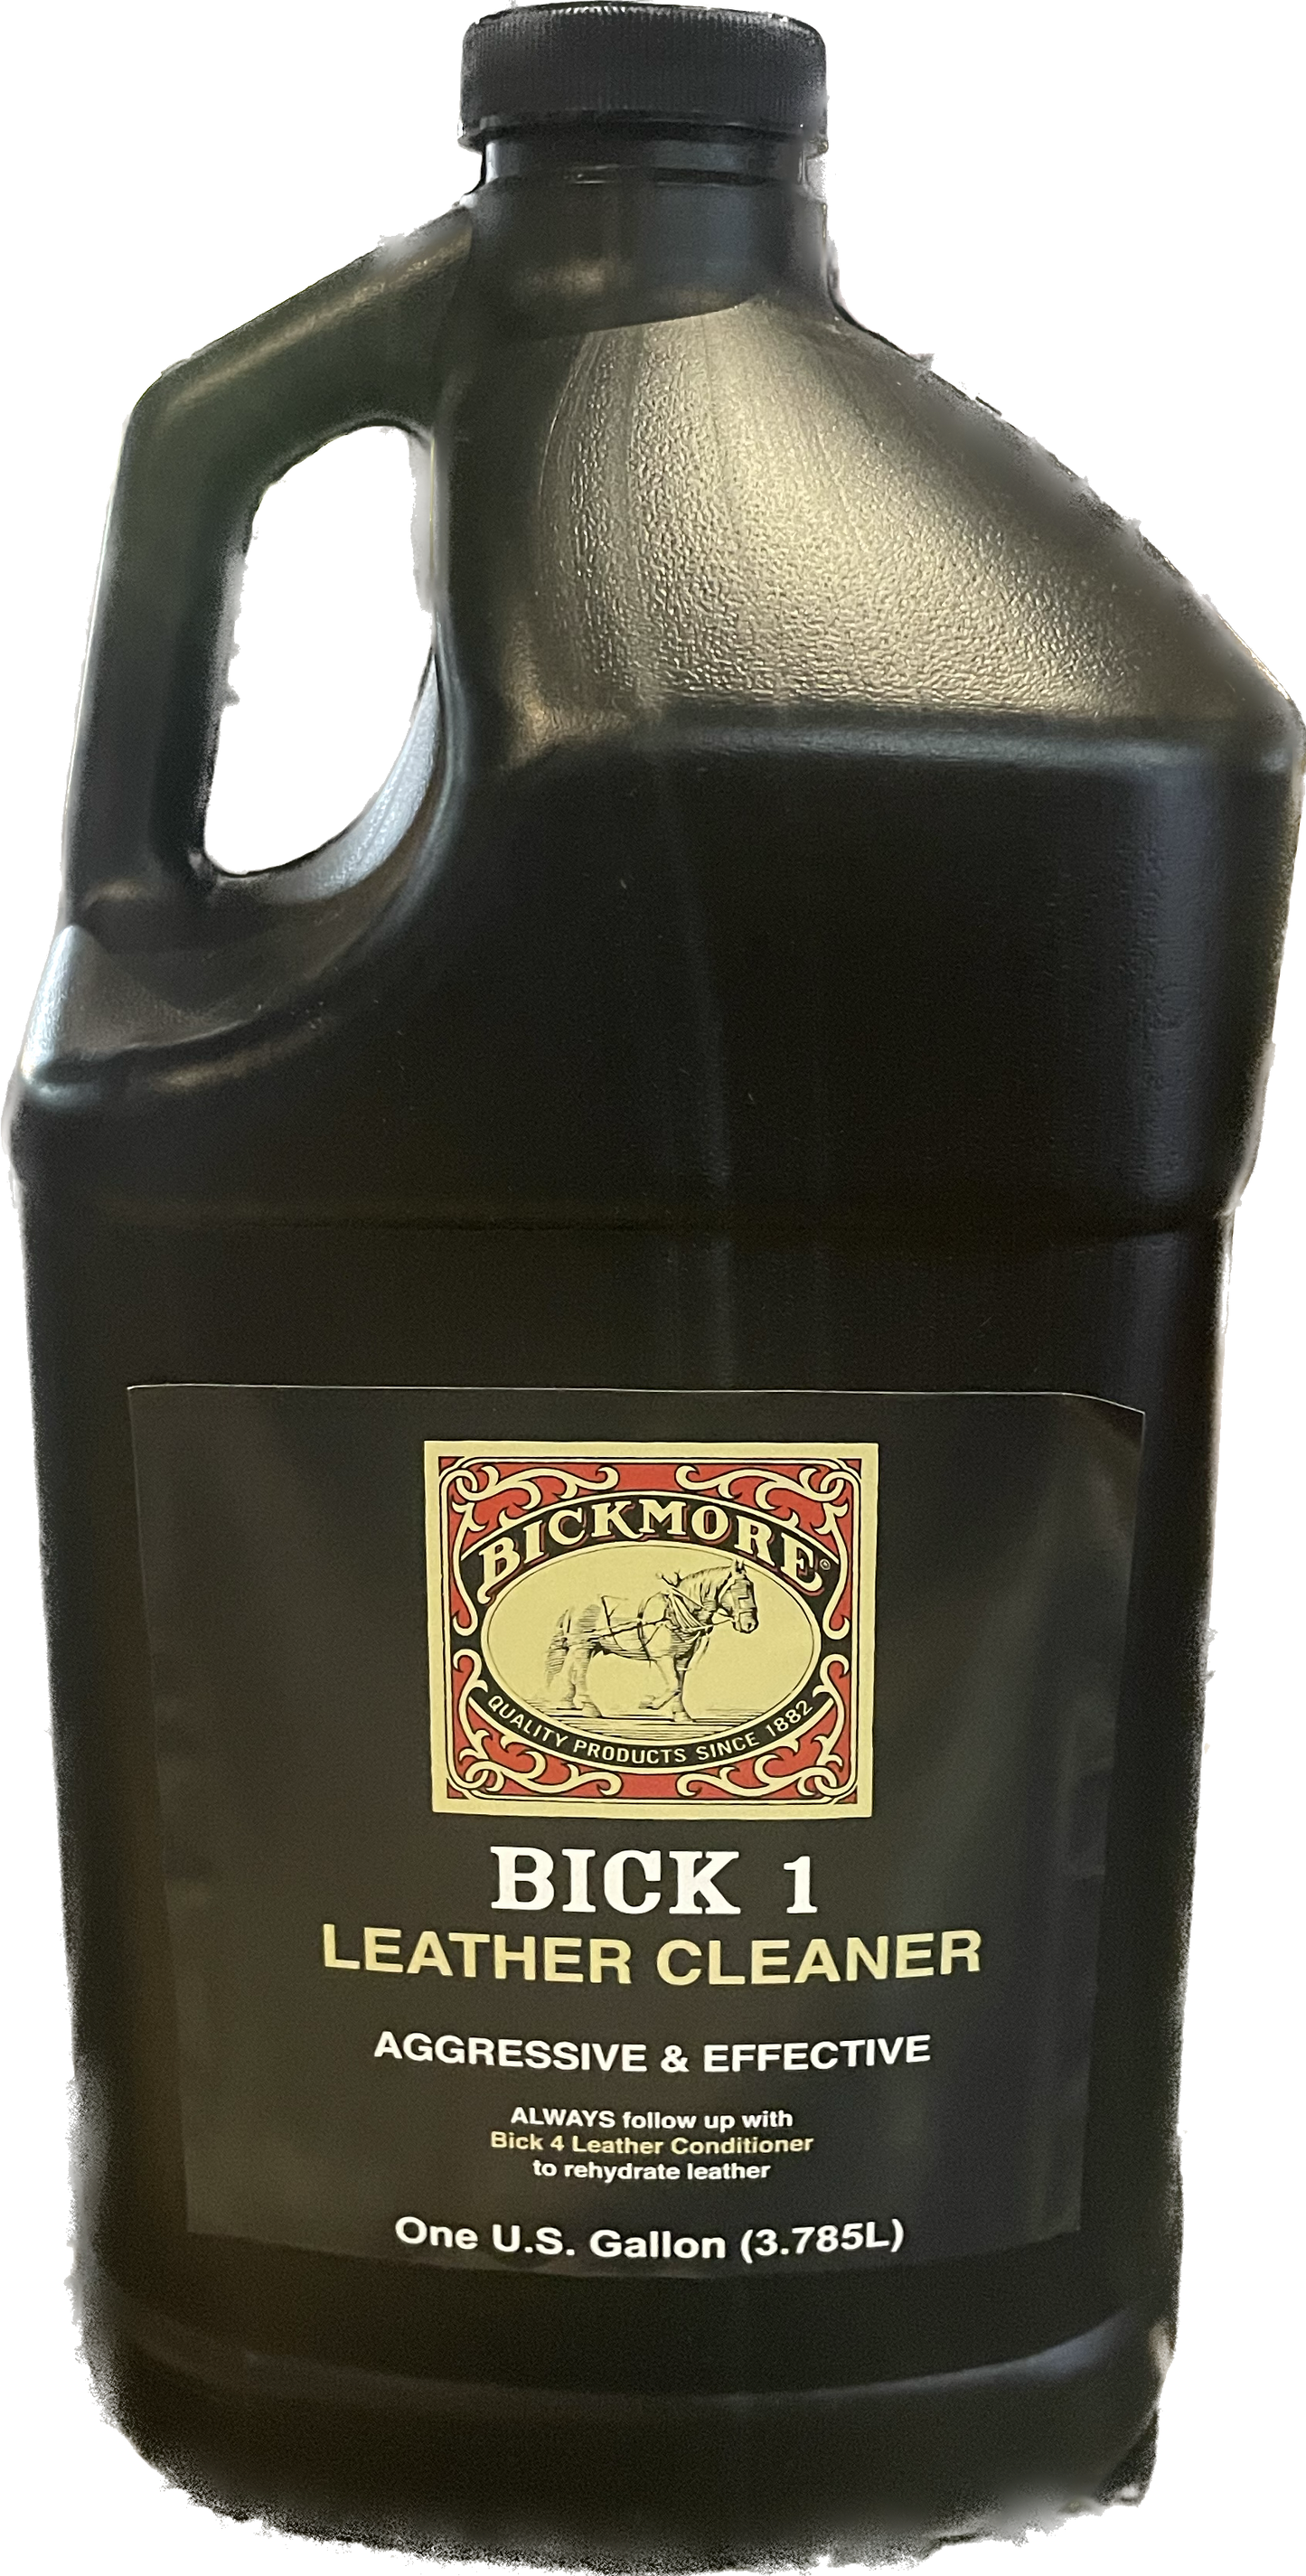 Bick 4 Leather Conditioner Gallon